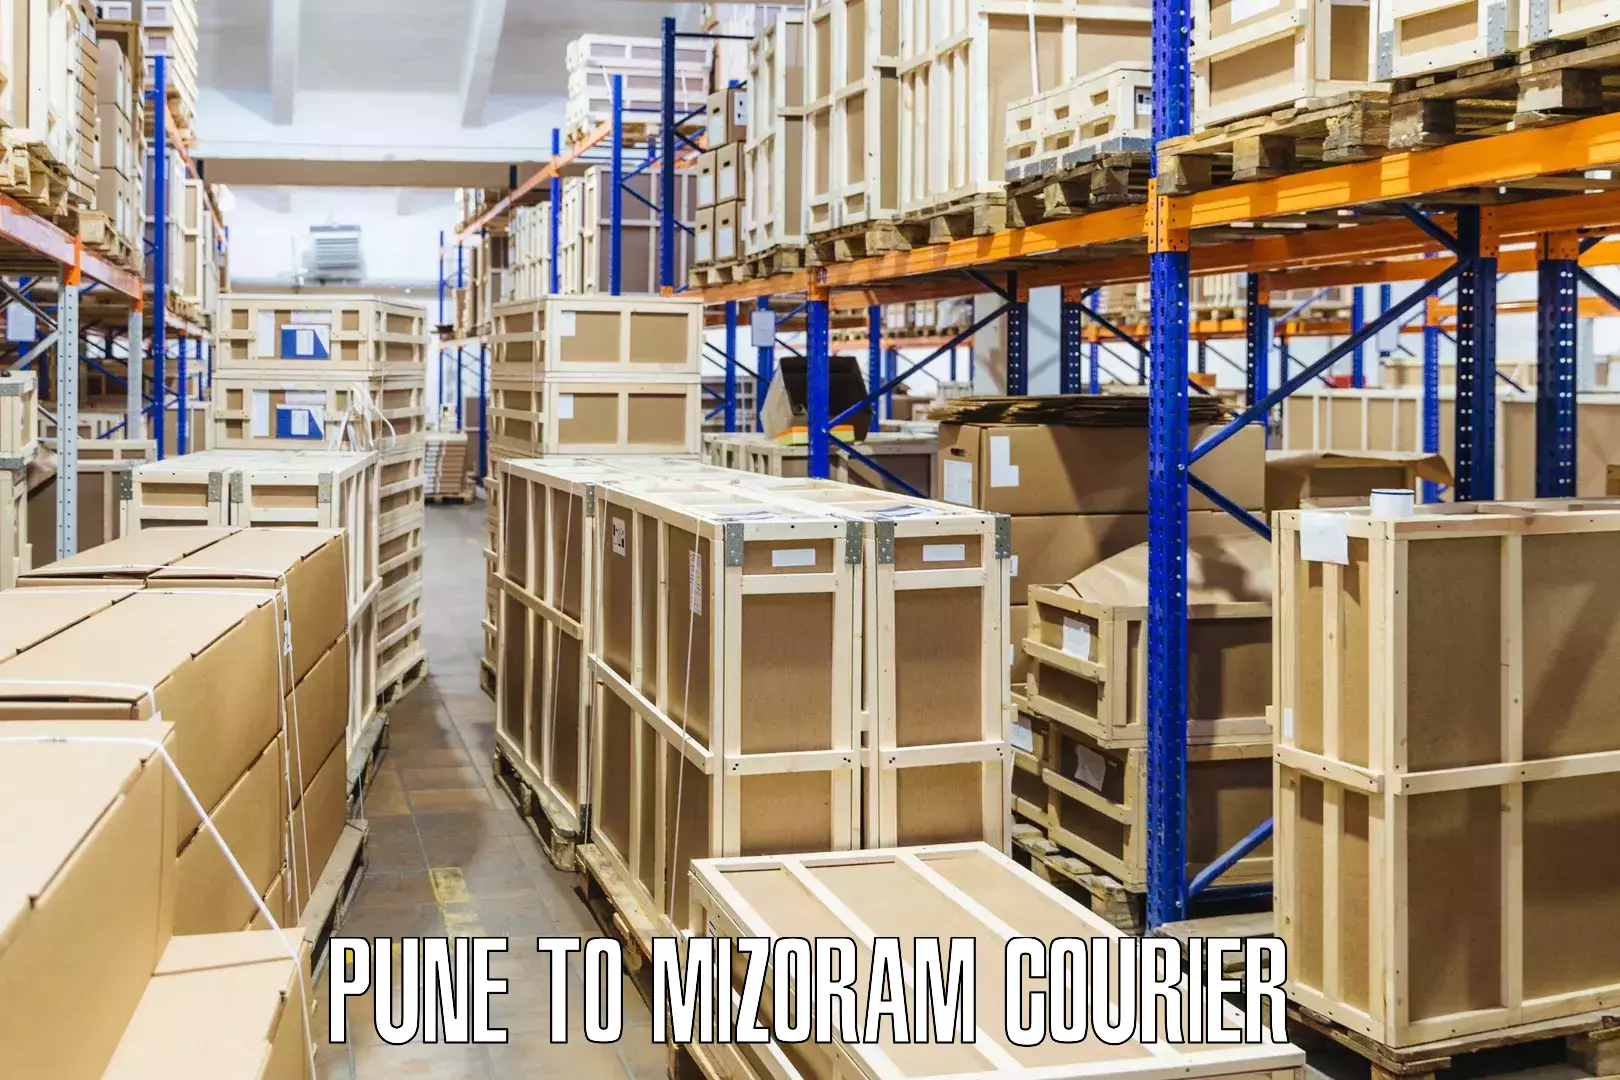 Customer-focused courier Pune to Mizoram